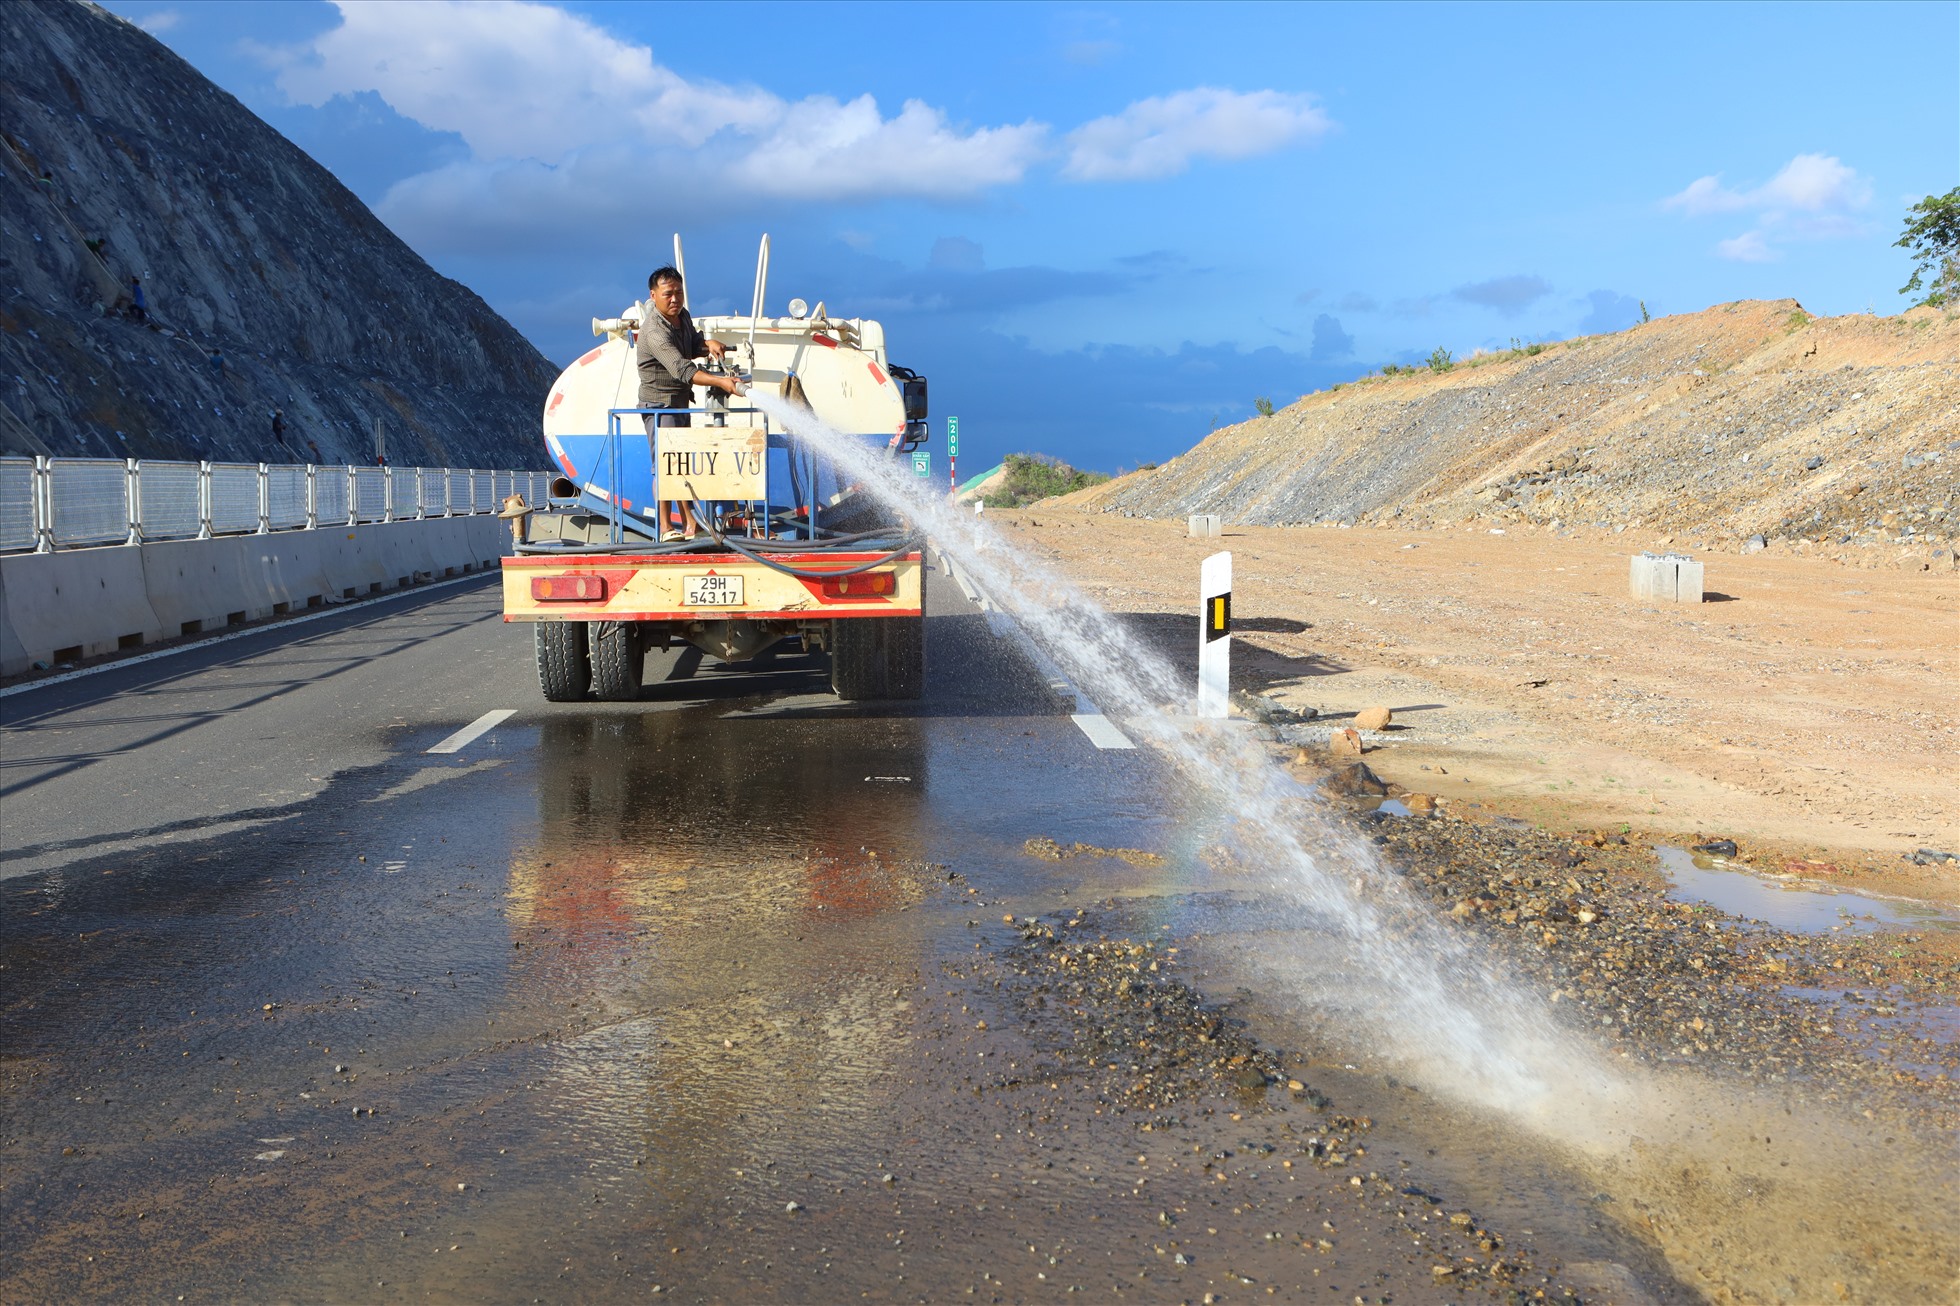 Xe rửa đường đang phun nước để vệ sinh mặt đường tại vị trí km200, đây là nơi xẻ núi để thi công đường cao tốc nên bụi đất bám nhiều dưới nền đường.